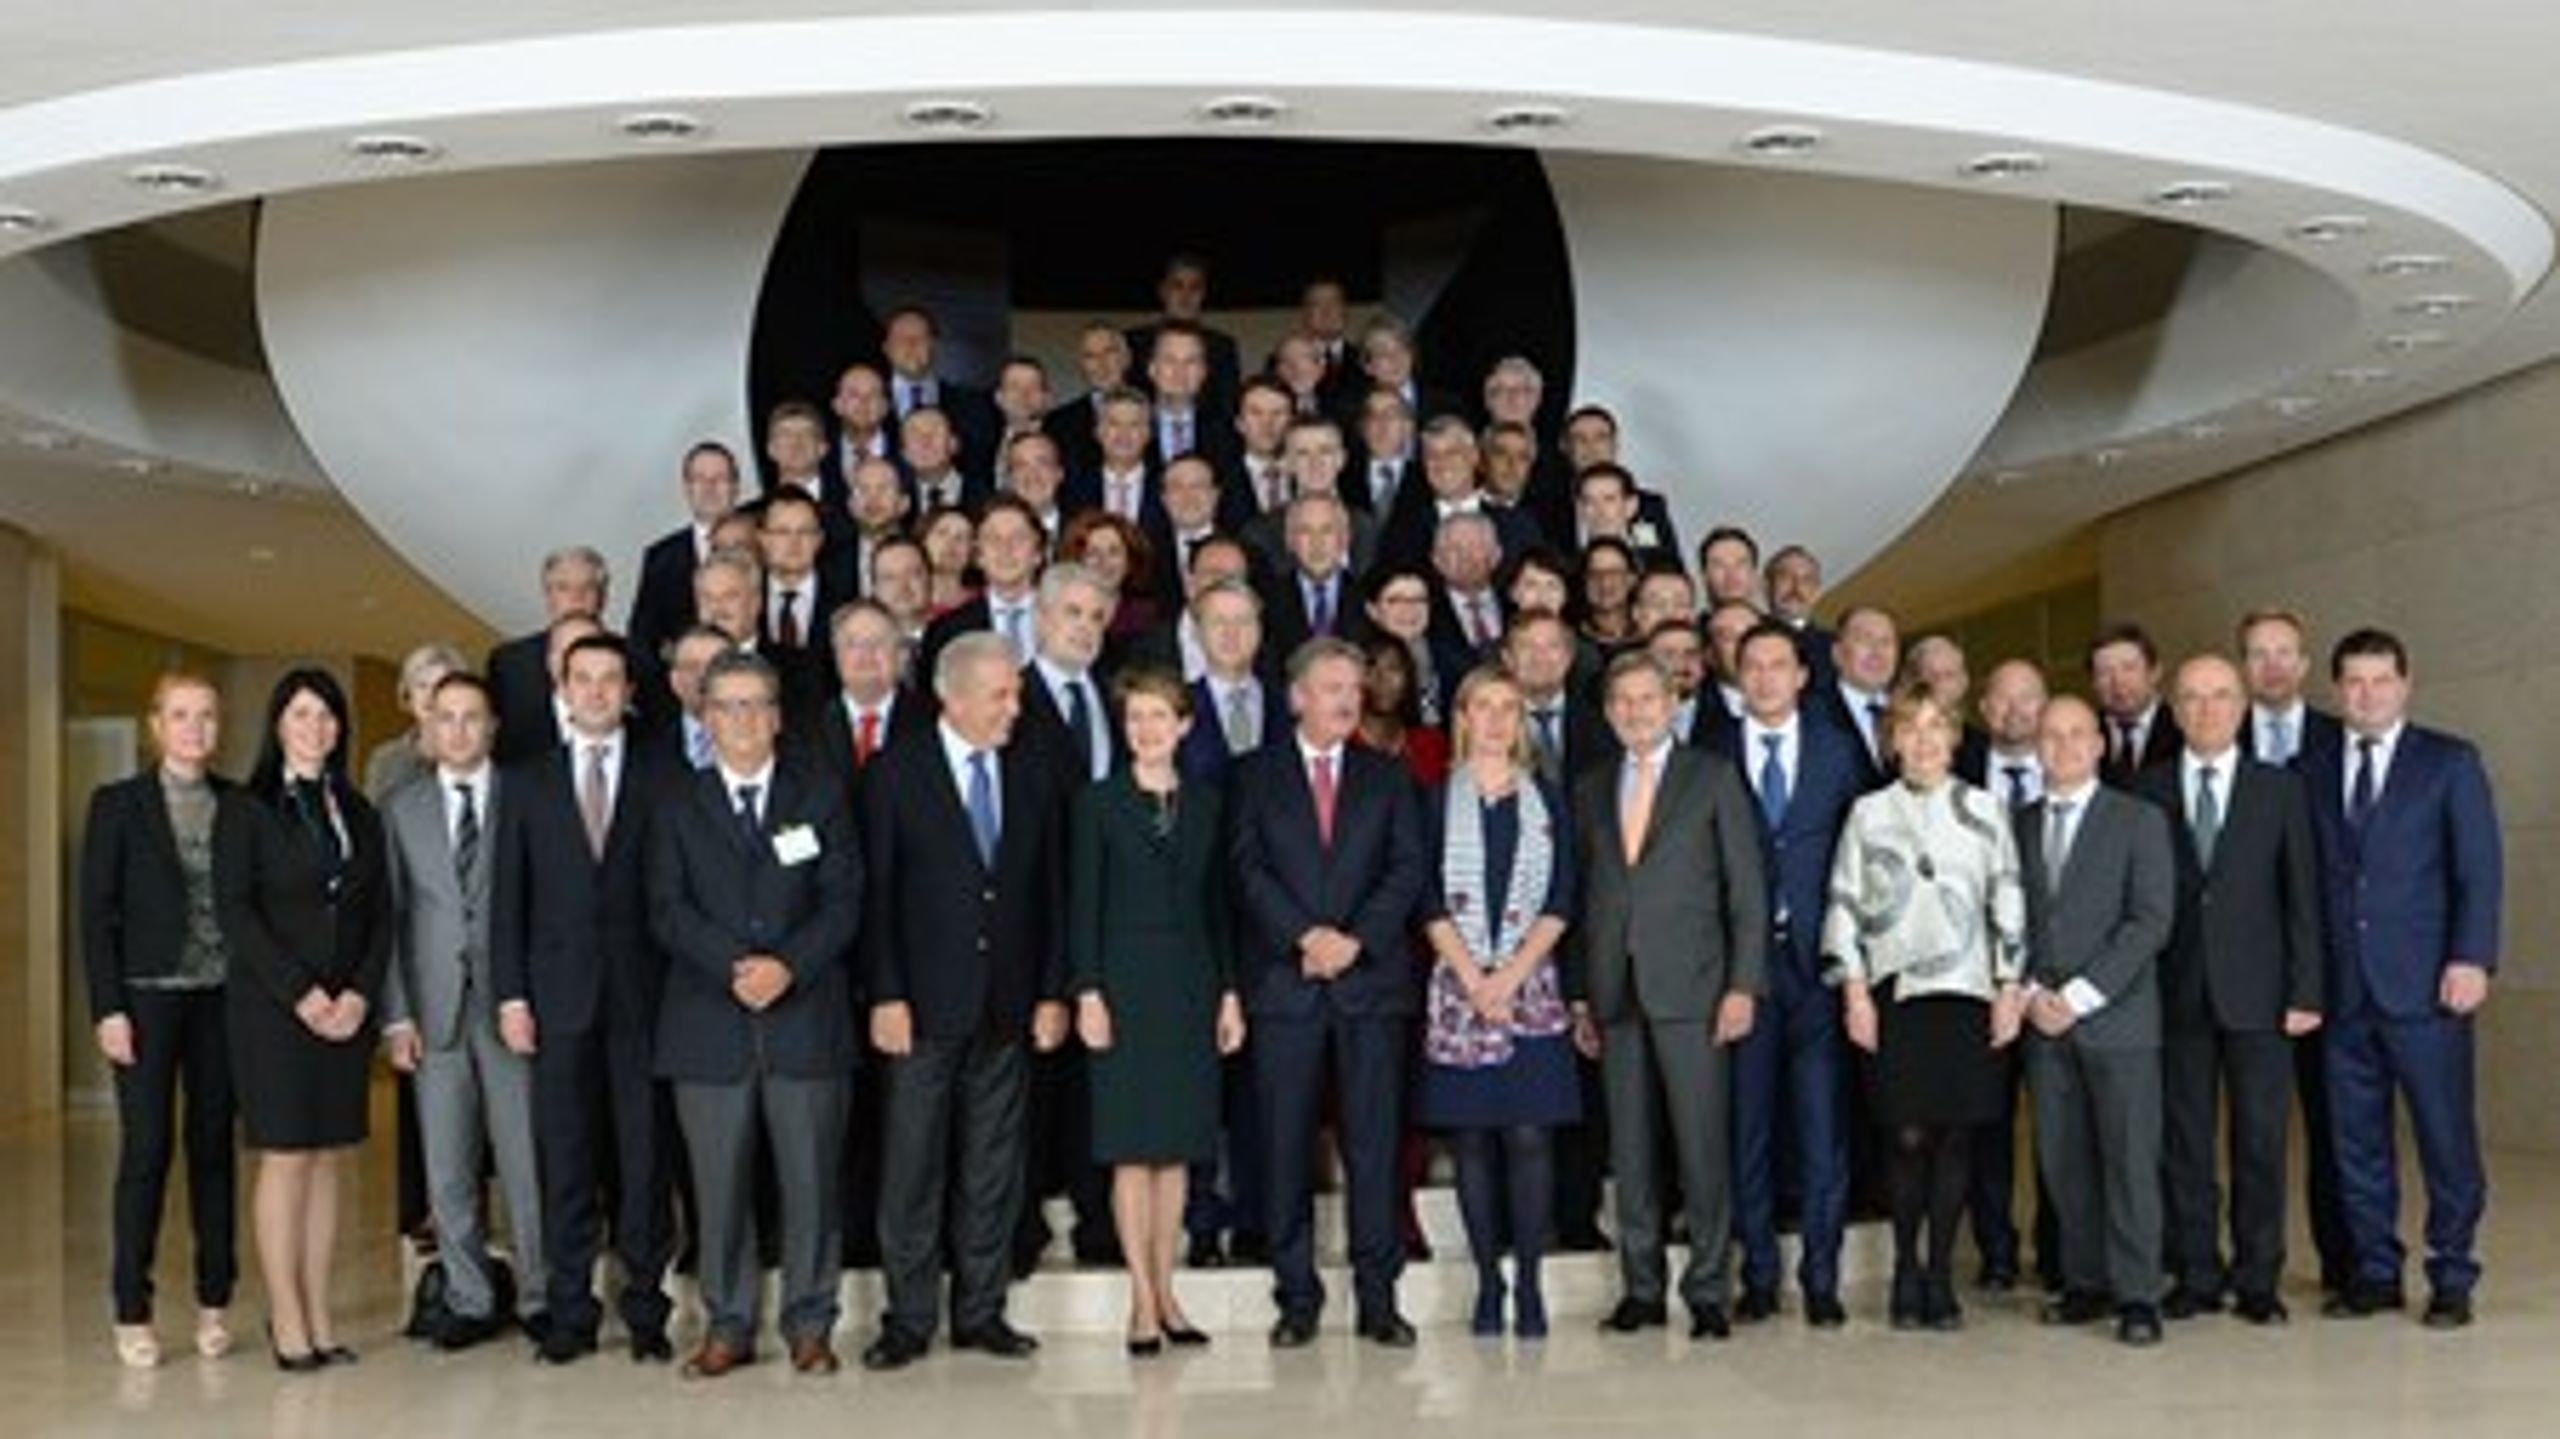 Ministre fra 40 lande mødtes i Luxembourg for at diskutere problemer langs den såkaldte balkanrute. Det er&nbsp;integrationsminister Inger Støjberg (V) helt til venstre.